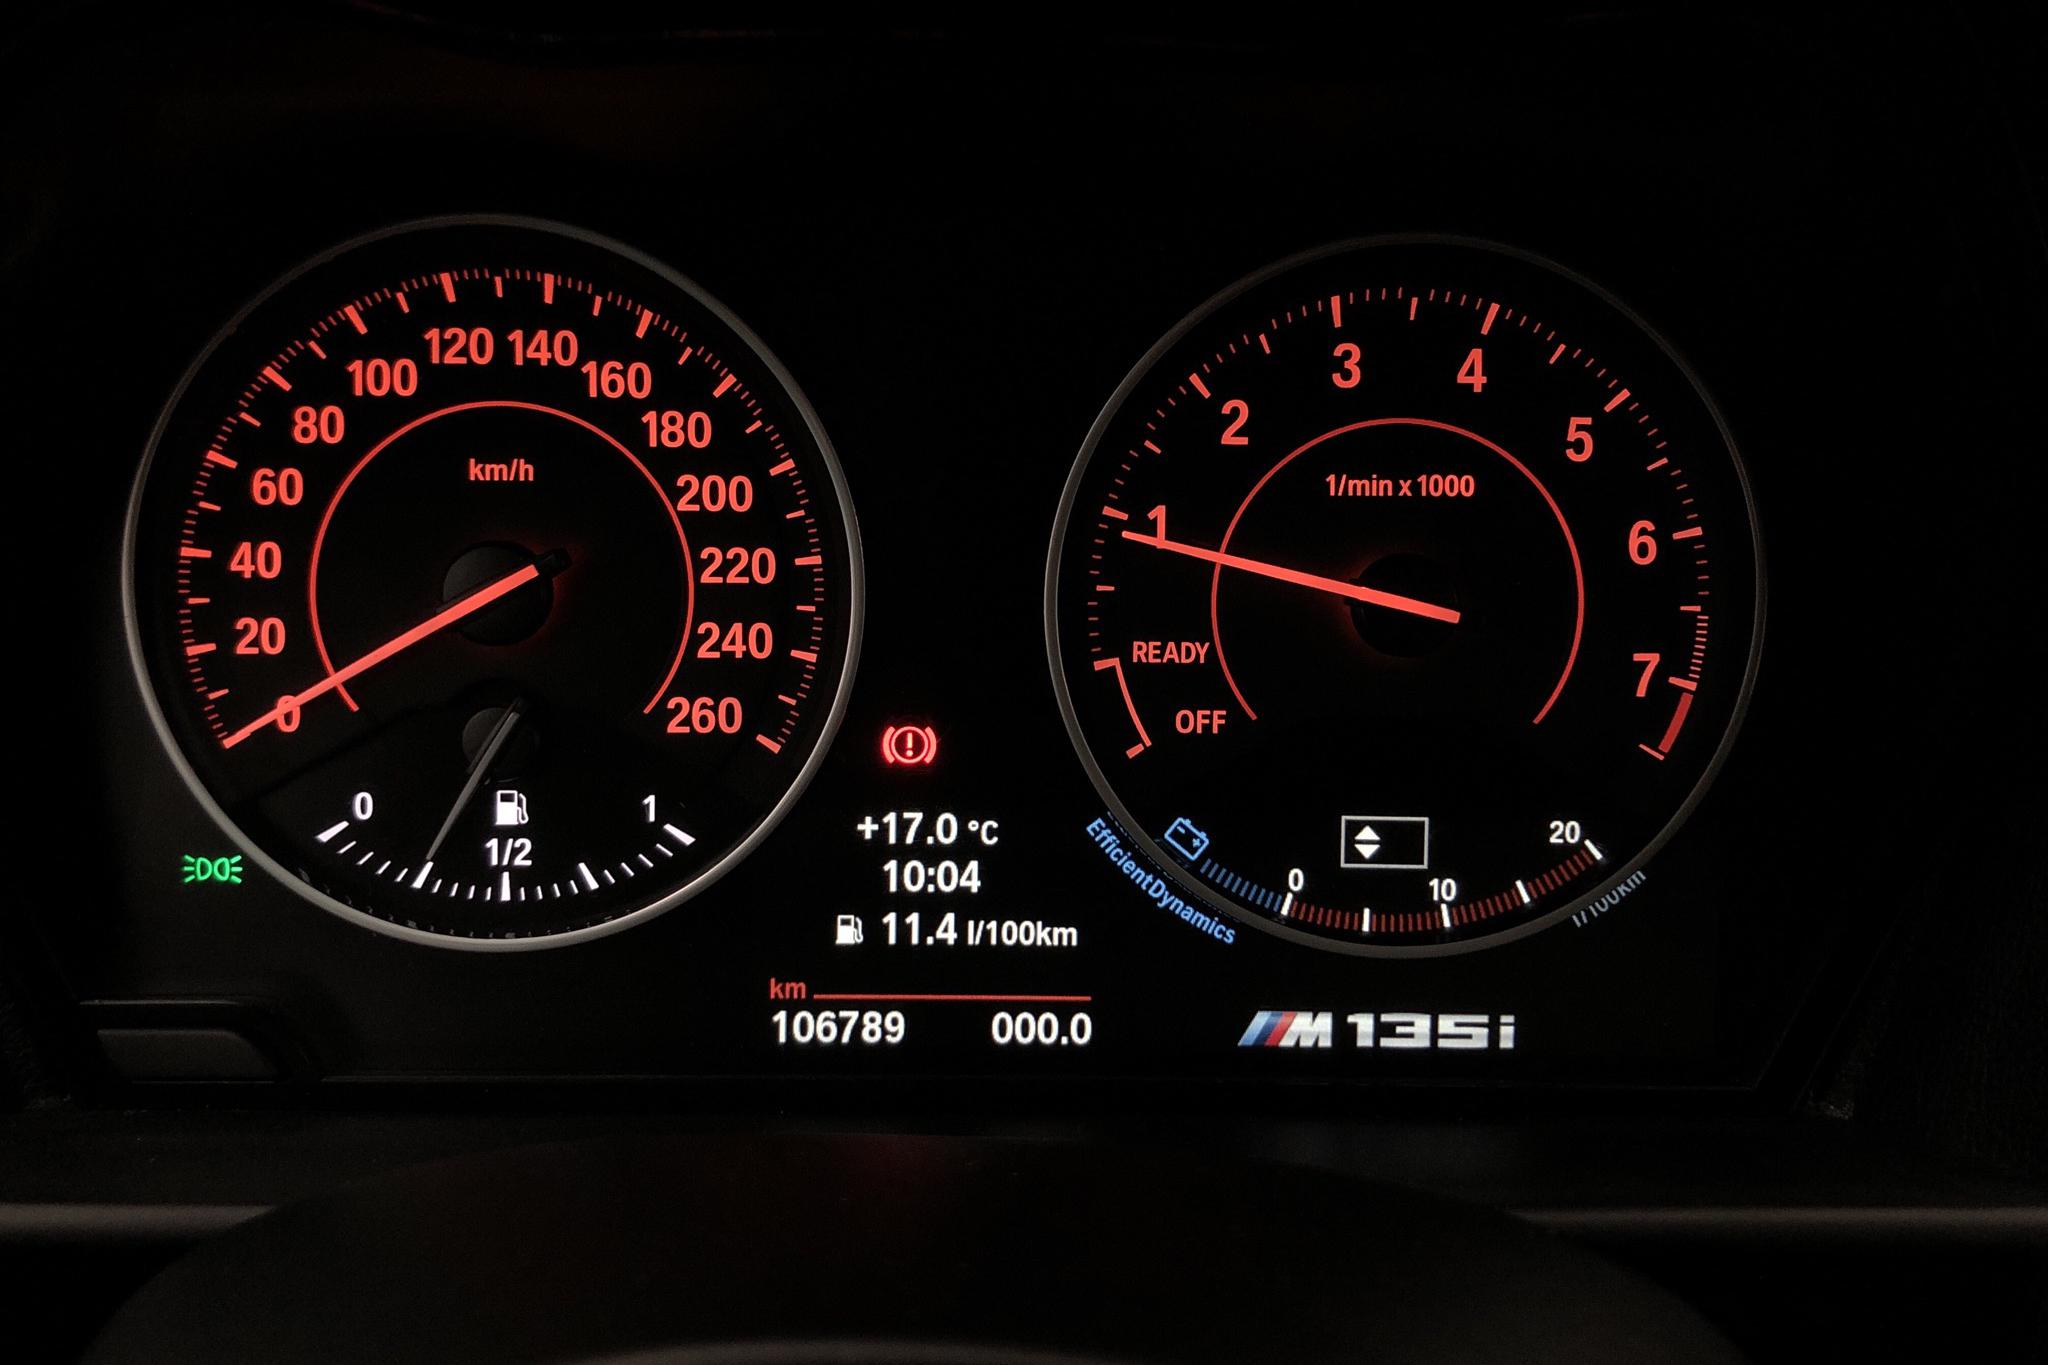 BMW M135i 5dr, F20 (320hk) - 106 790 km - Manual - white - 2016